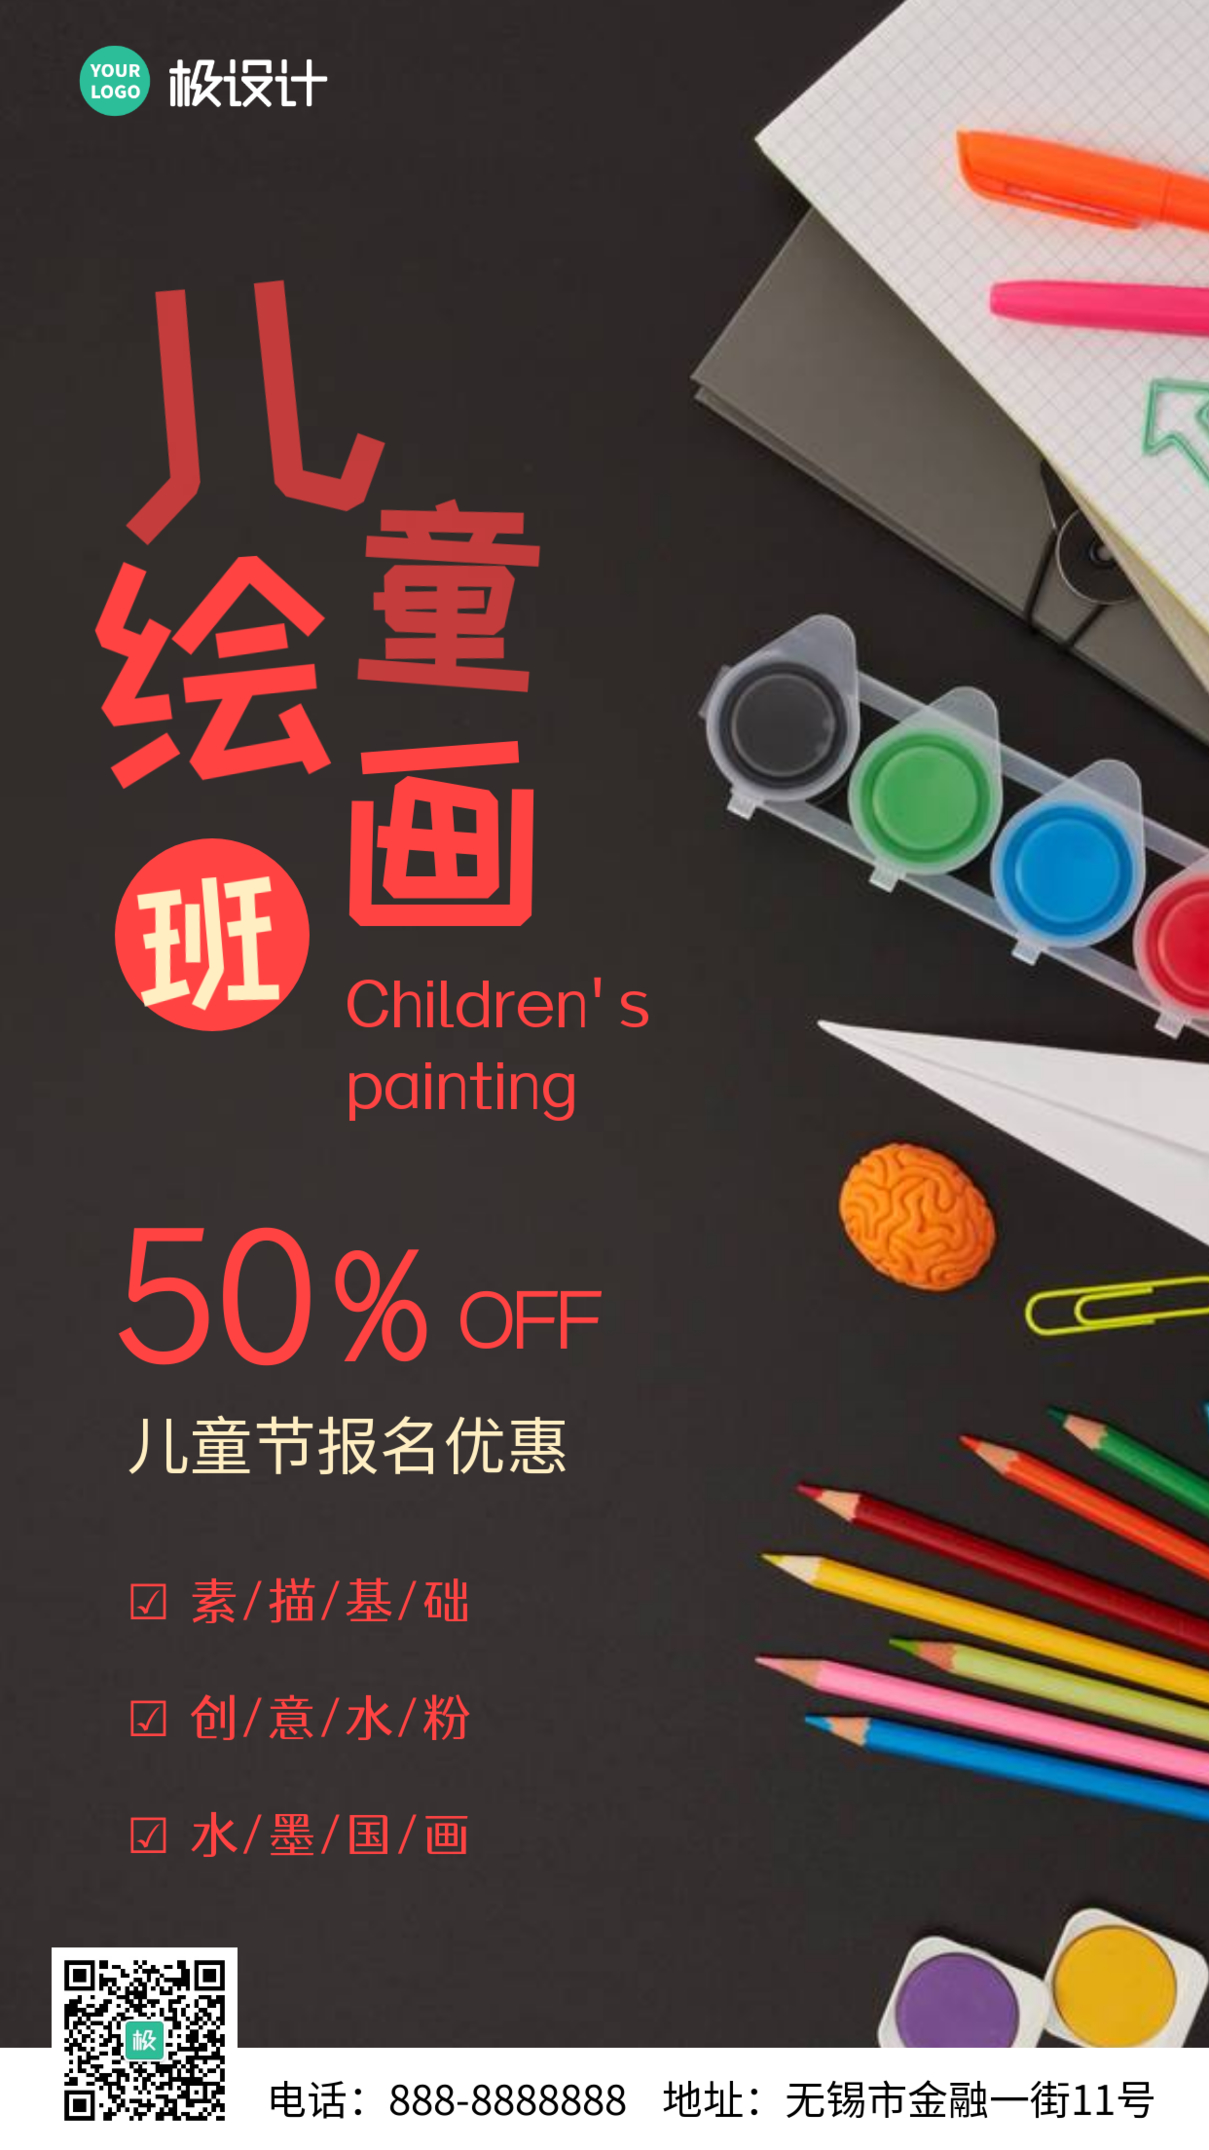 61儿童节绘画班特惠宣传促销摄影图简约手机海报